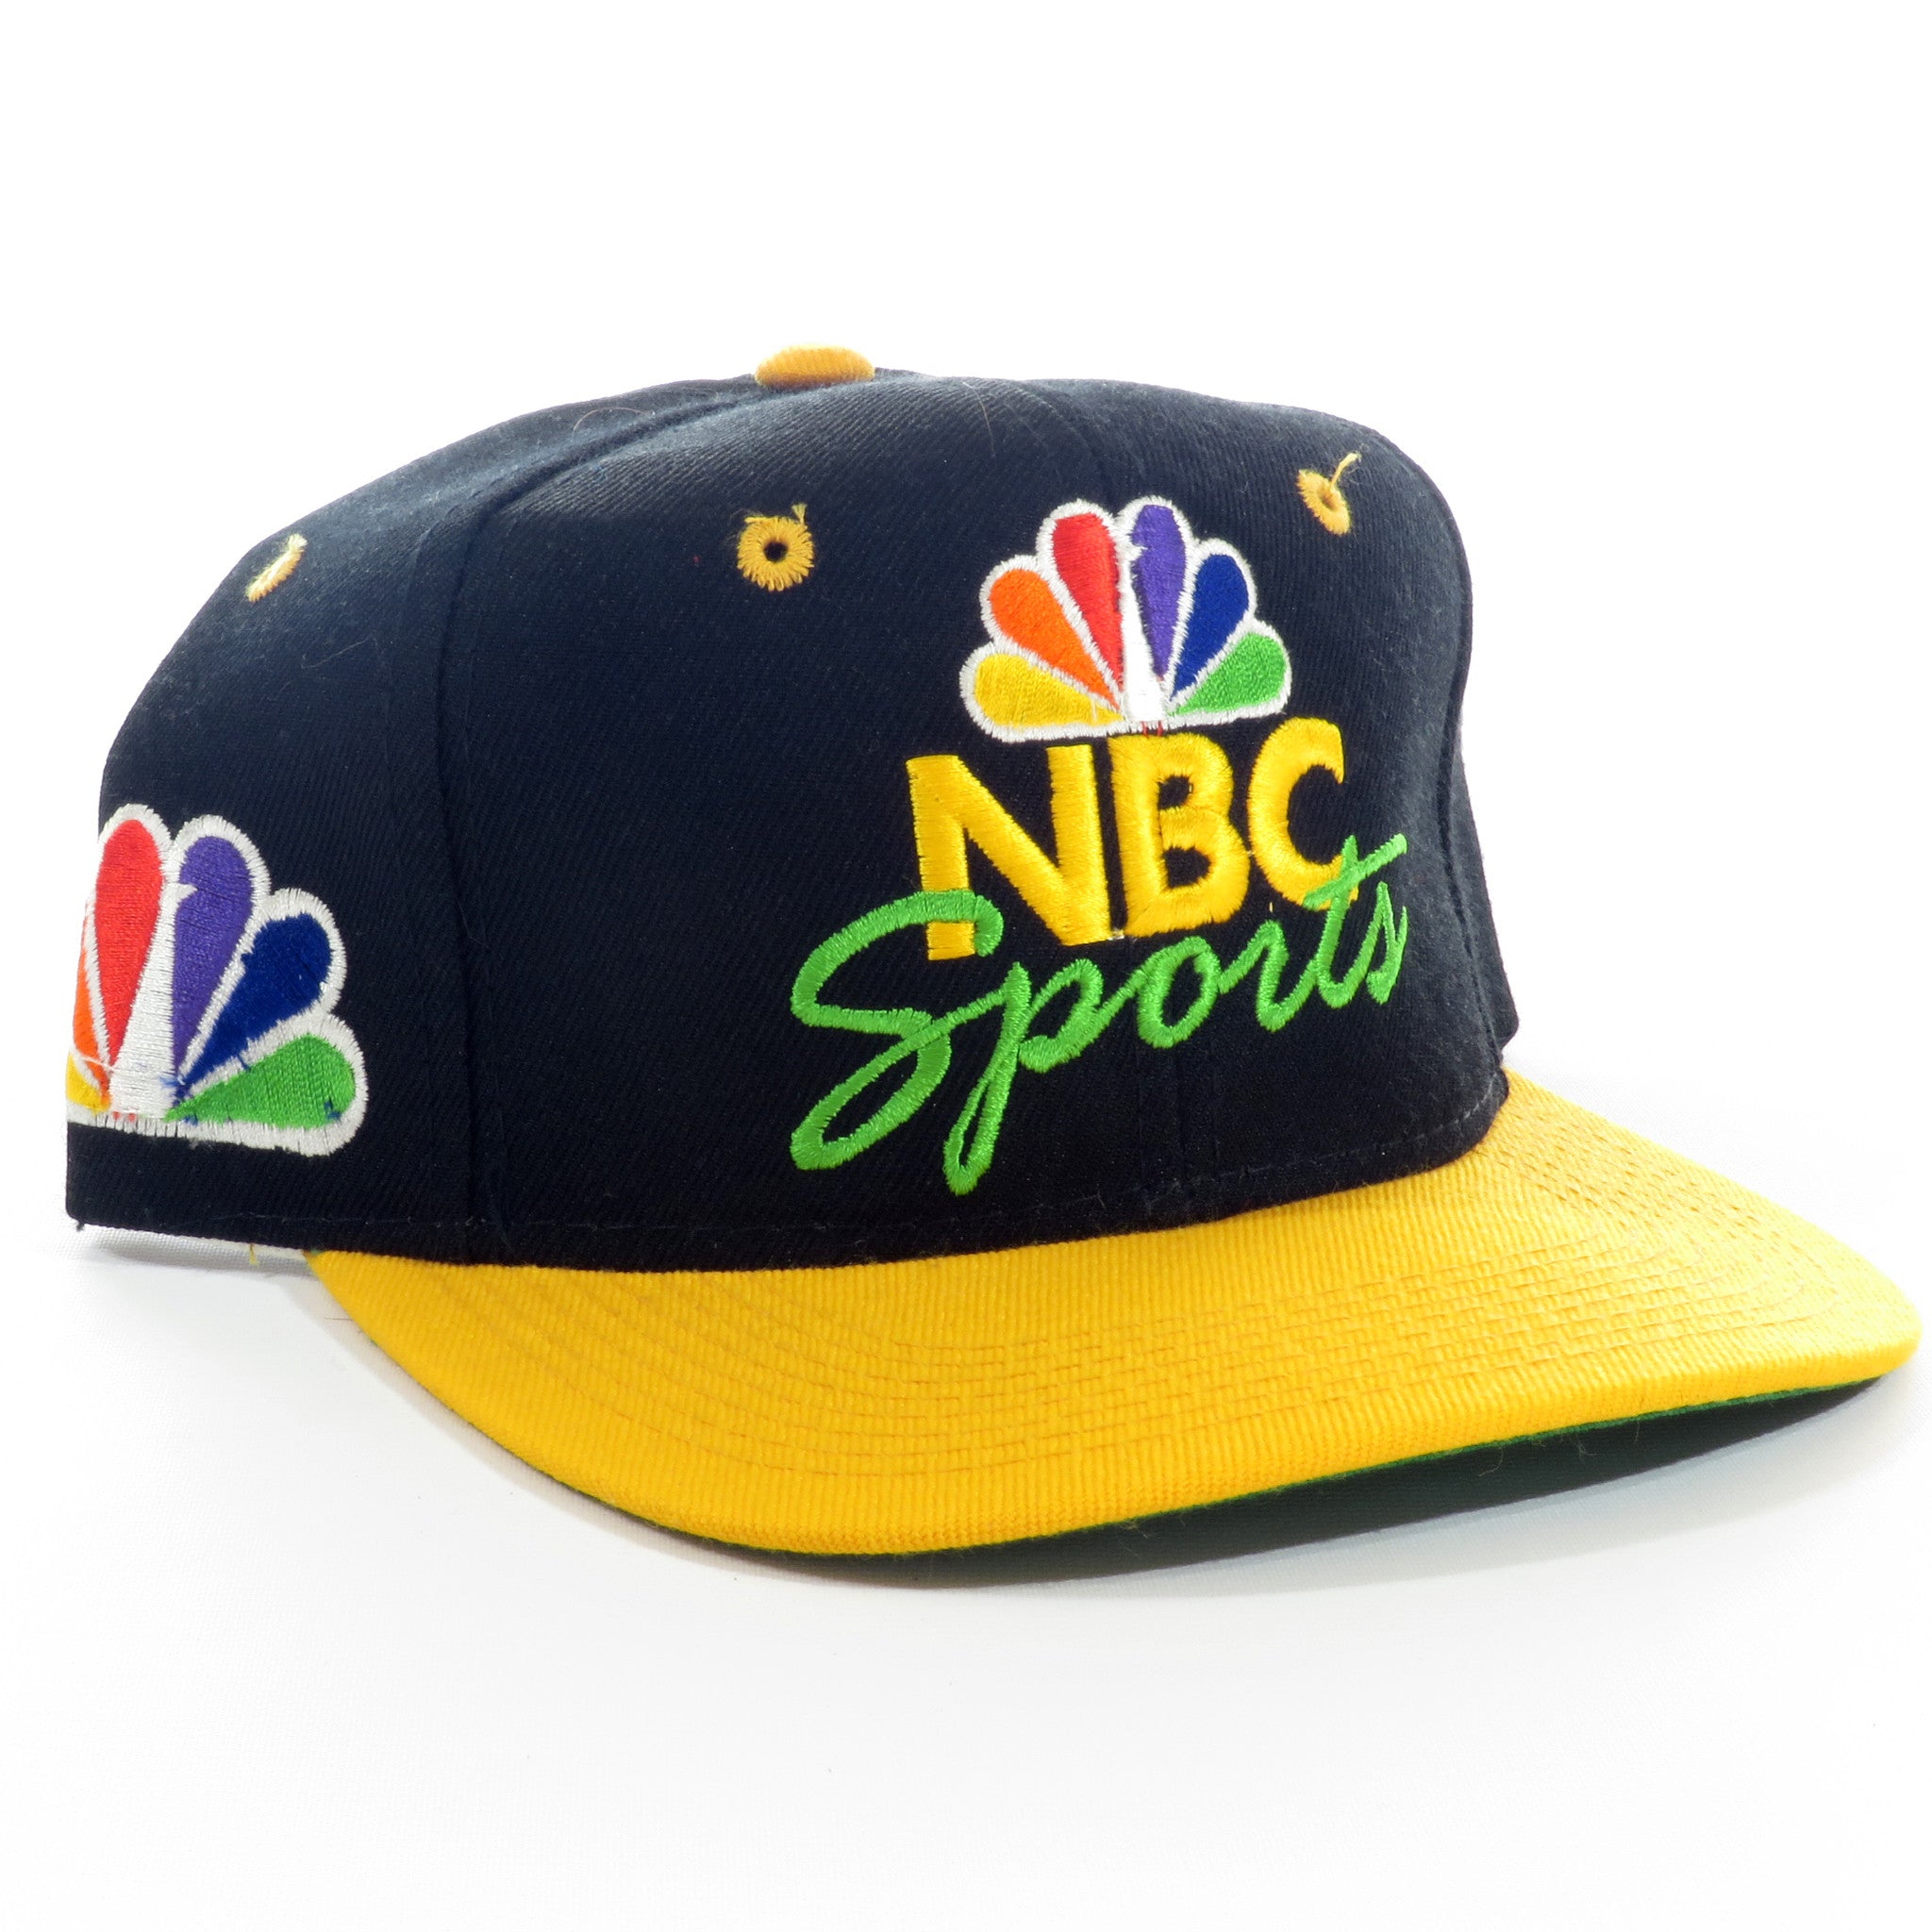 Sports Specialties NBC Sports Snapback Hat